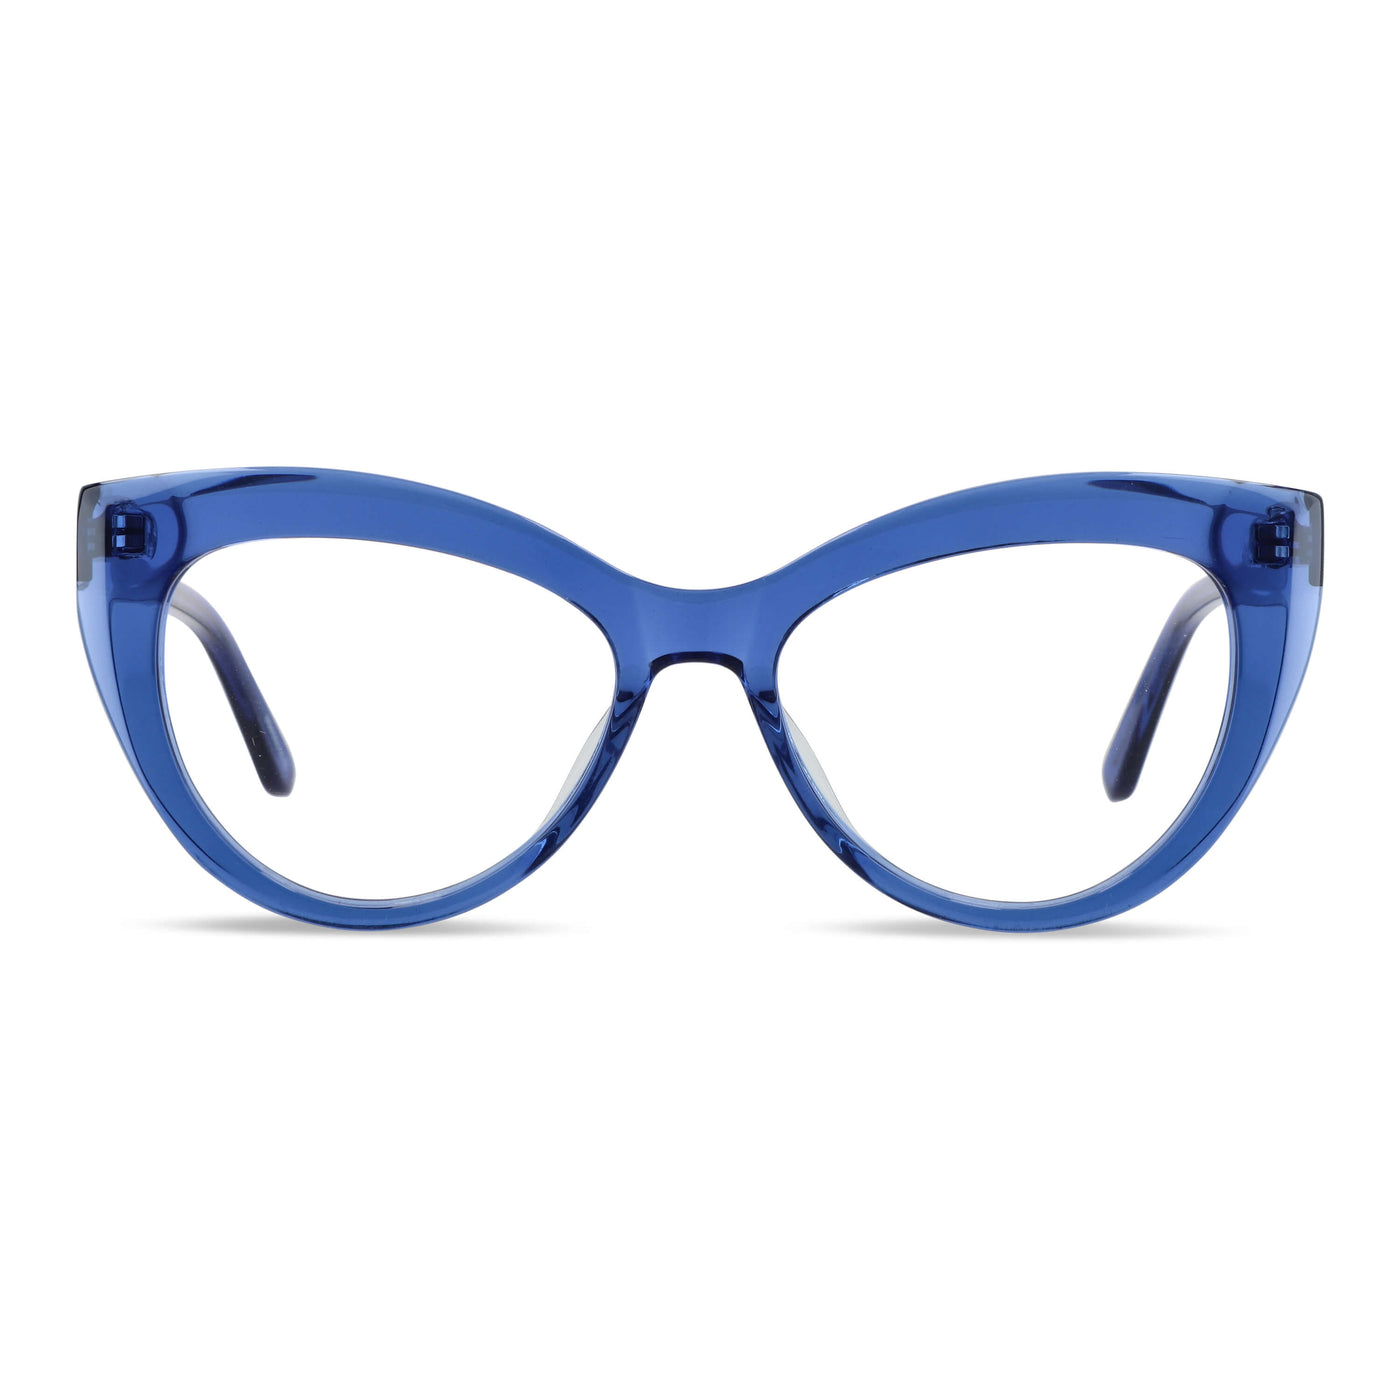  anteojos lentes agatados mujer cara redonda grande receta distribuidor mayorista opticas sustentable multifocales azul.jpg